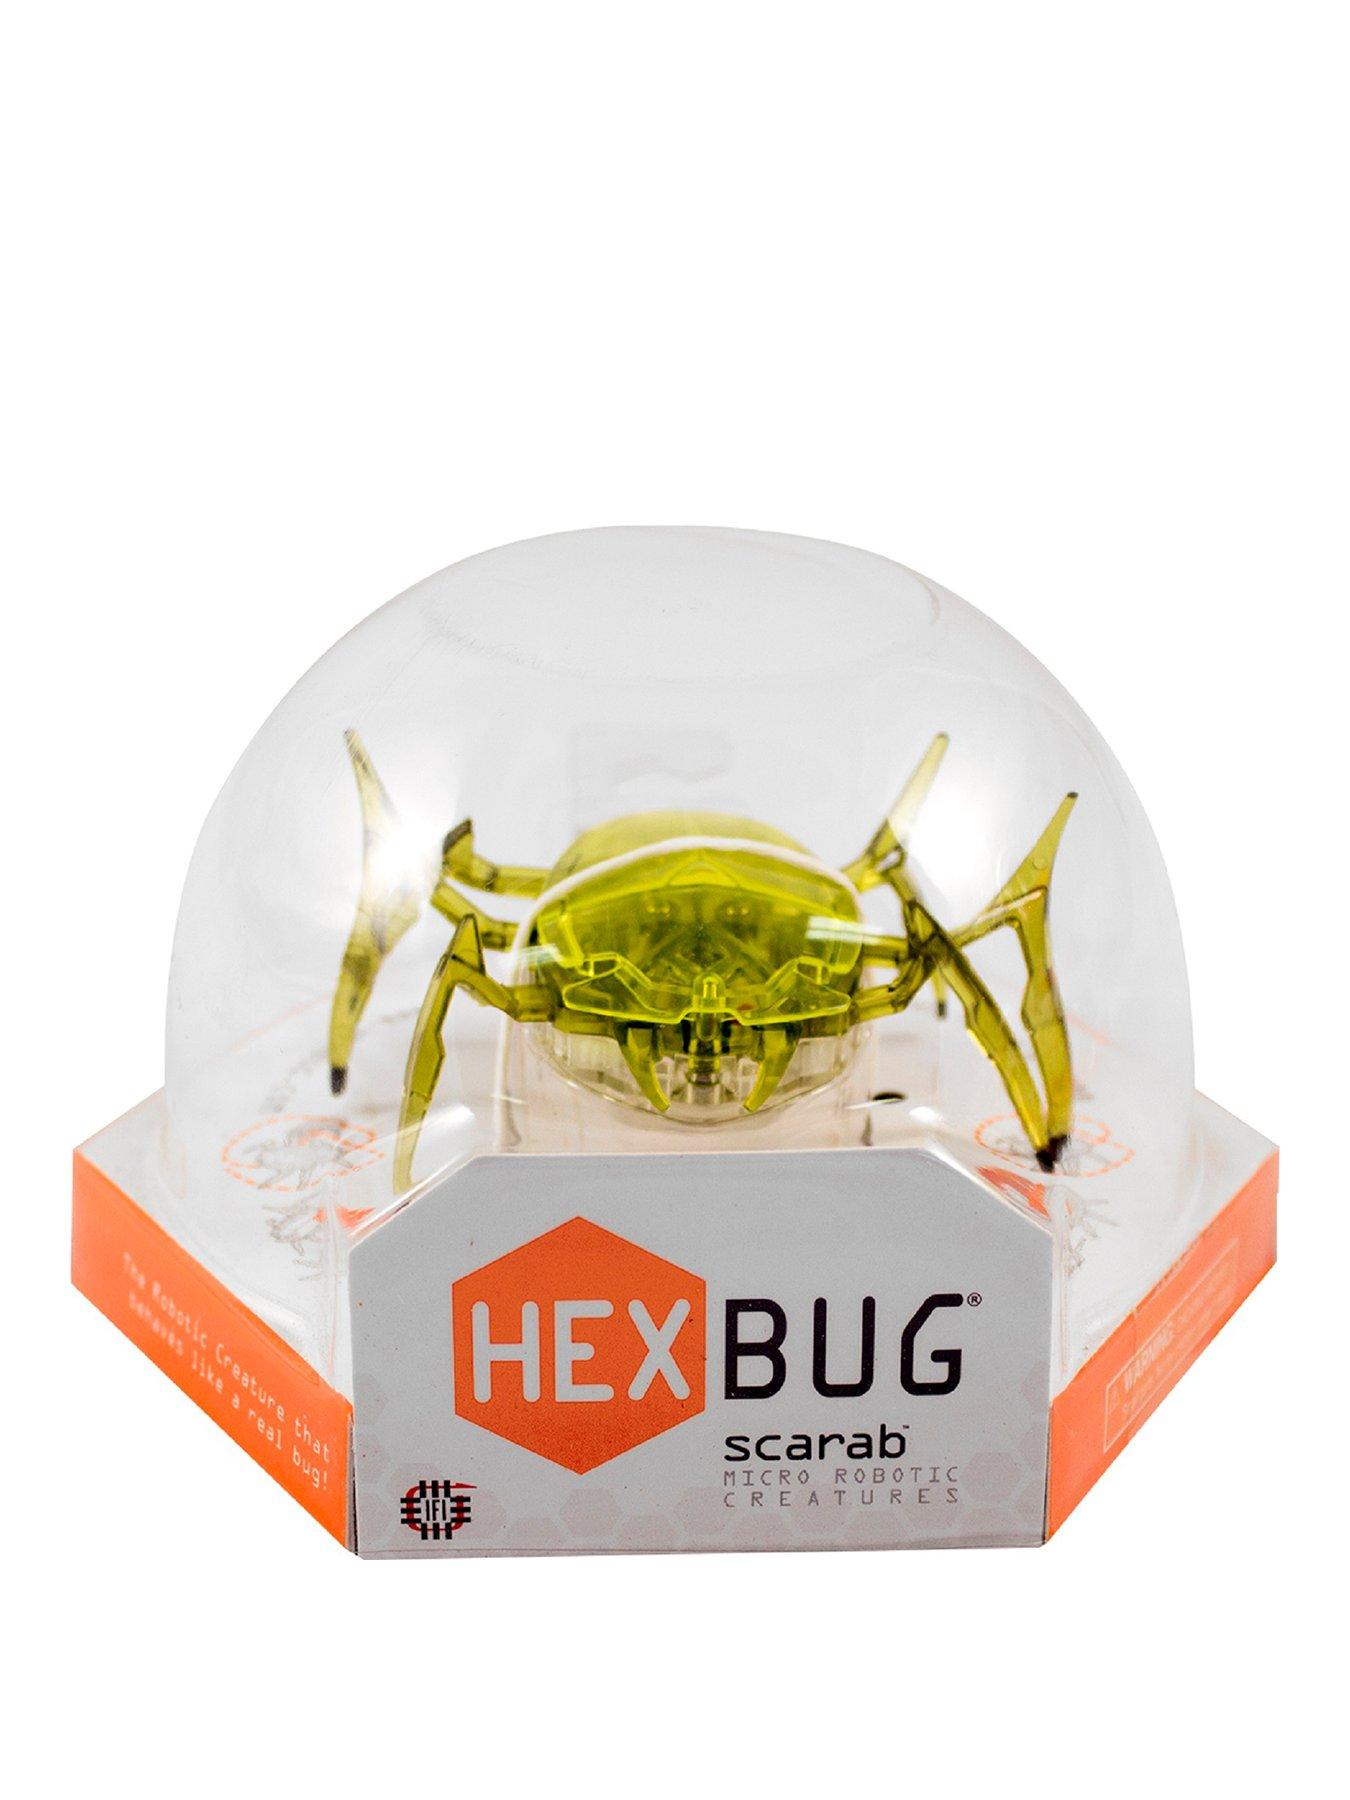 hexbug scarab